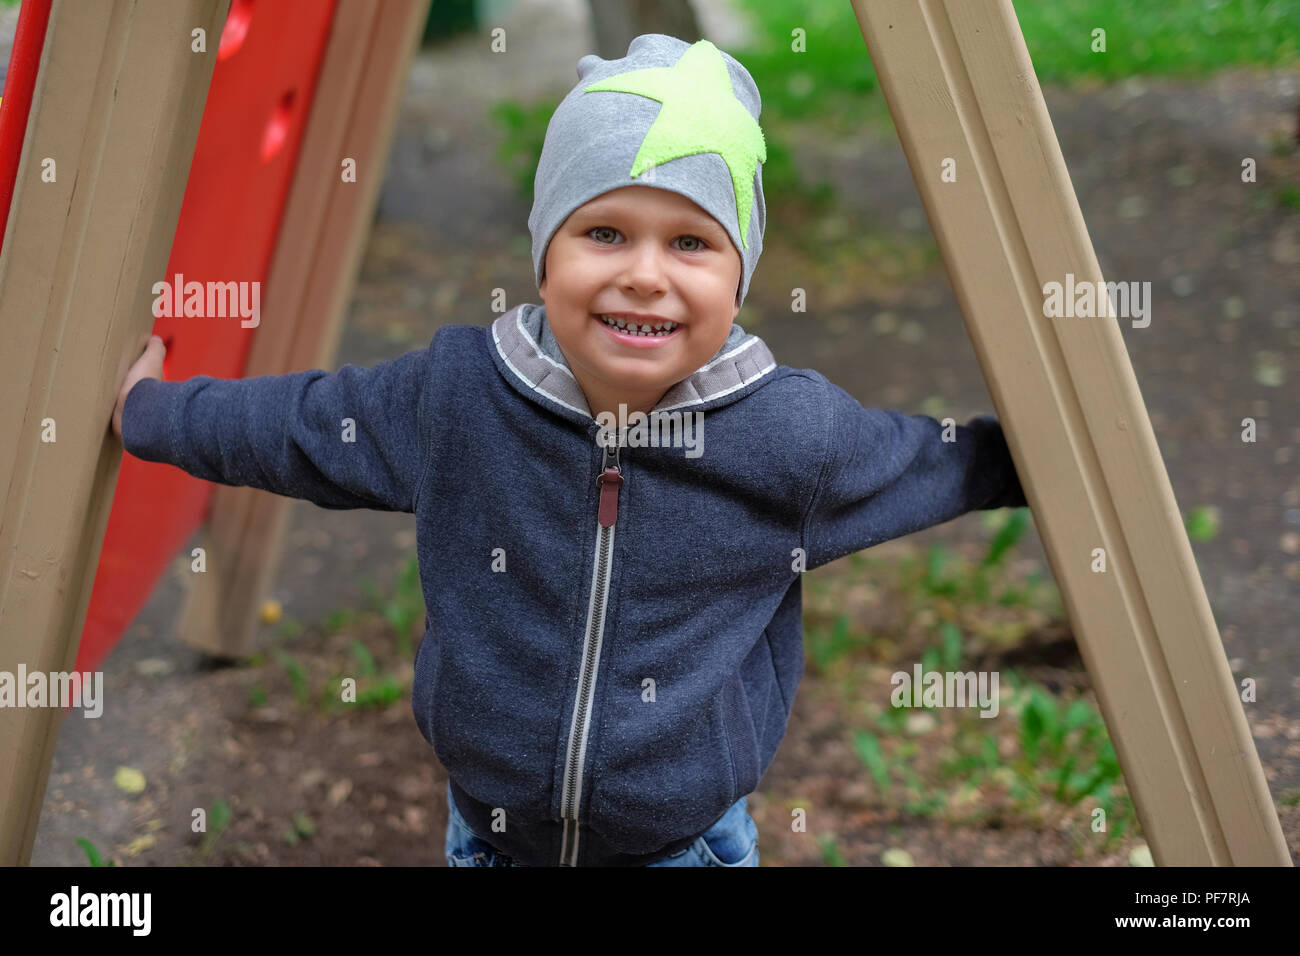 Petit Garçon jouant sur l'aire de jeux de plein air dans le parc en automne Banque D'Images